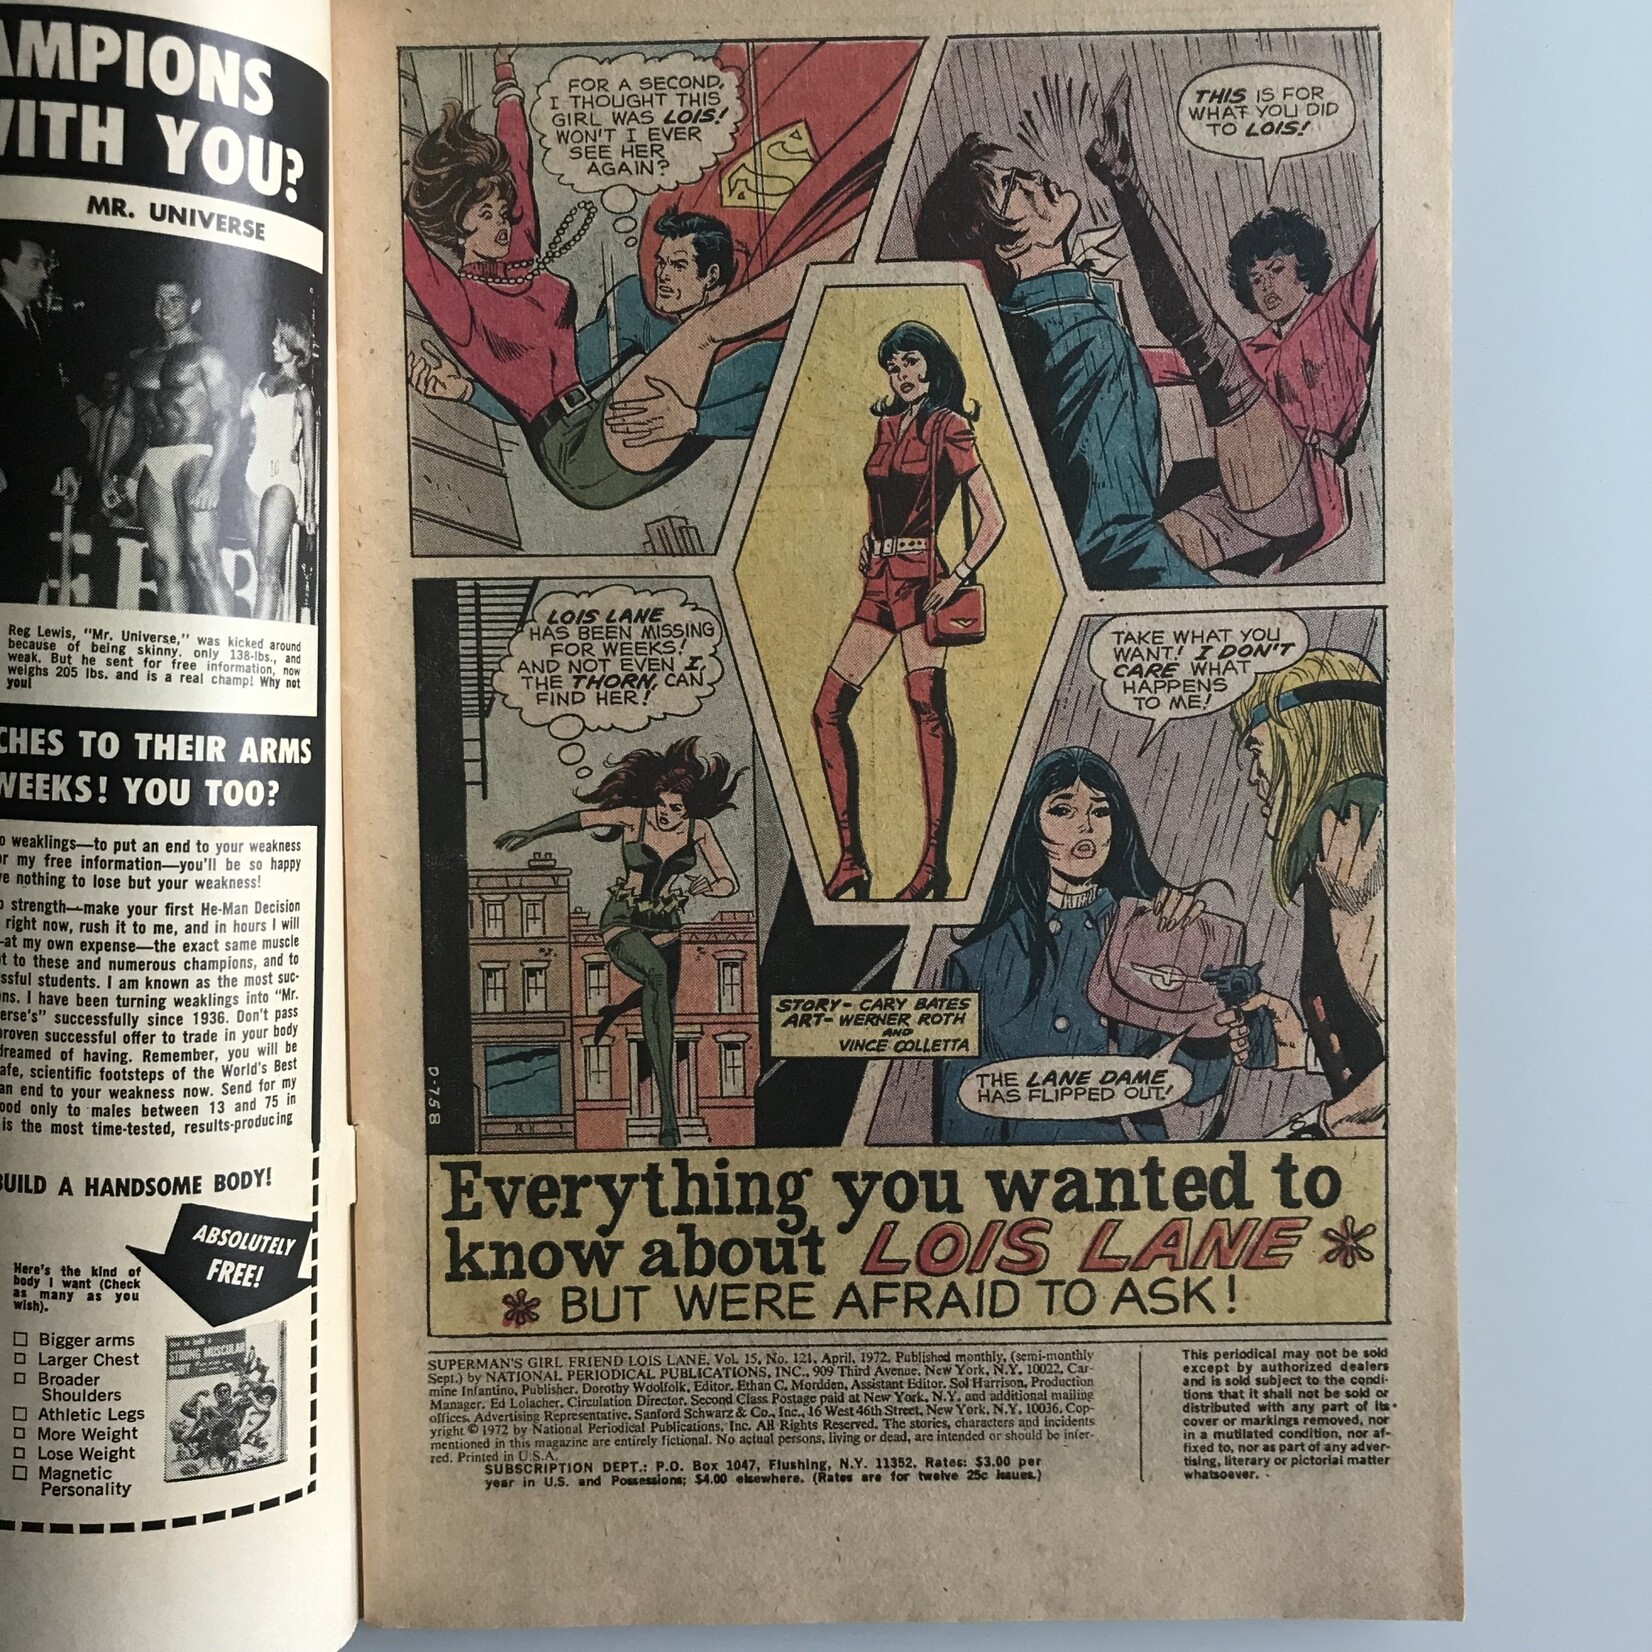 Superman's Girlfriend, Lois Lane - Vol. 1 #121 April 1972 - Comic Book (GOOD)